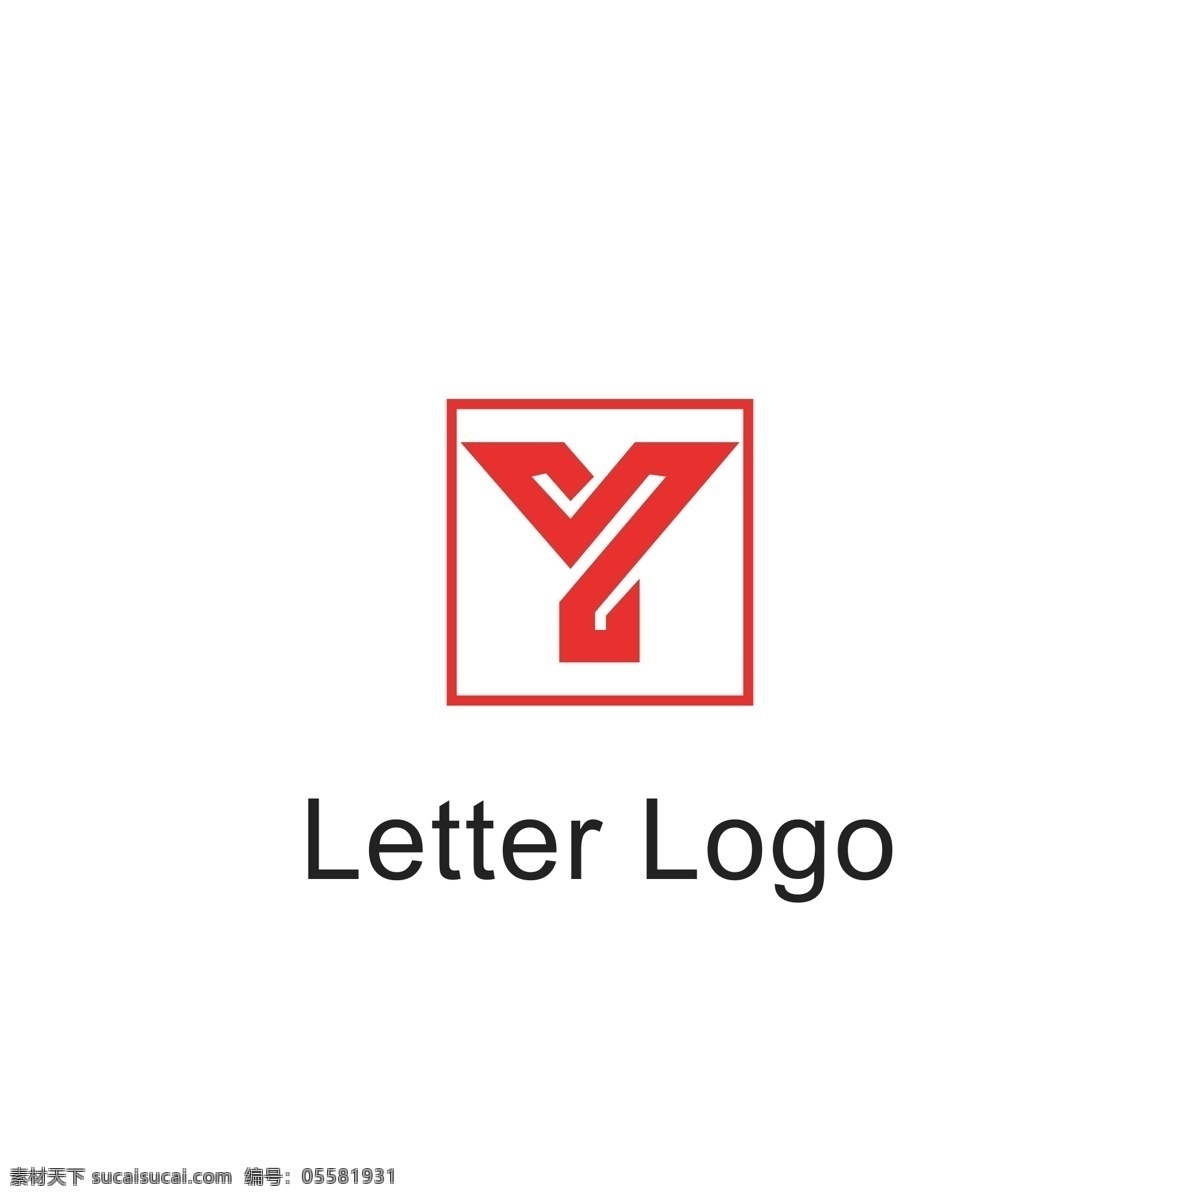 字母 组合 logo 字母组合 字母变形 字母y 字母s 字母logo 通用logo logo设计 标识设计 标志设计 ai矢量